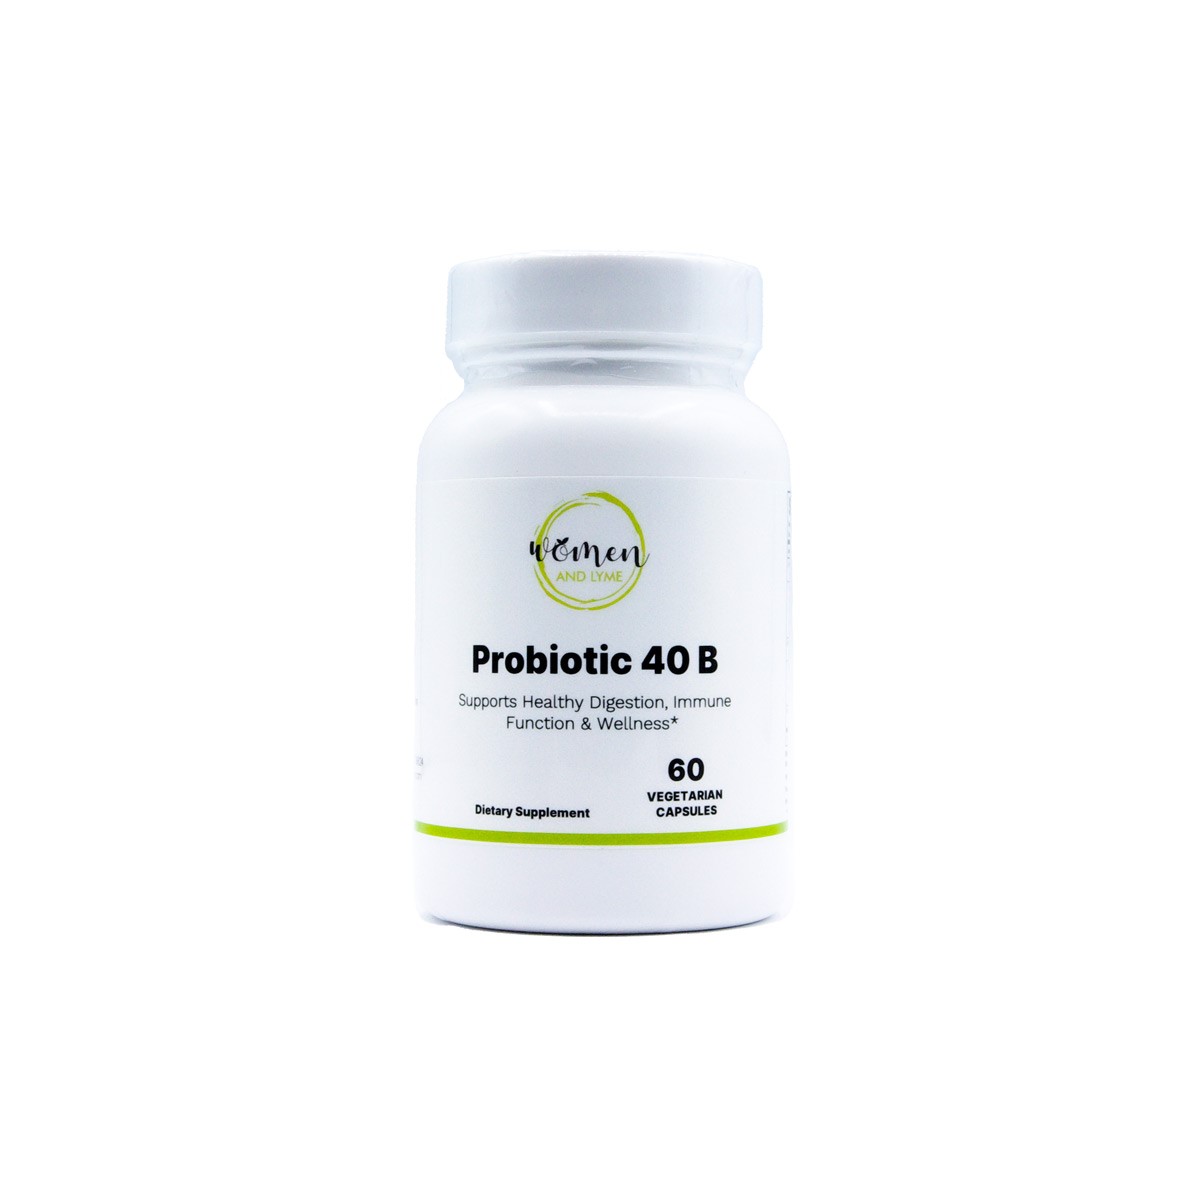 Probiotic 40 B